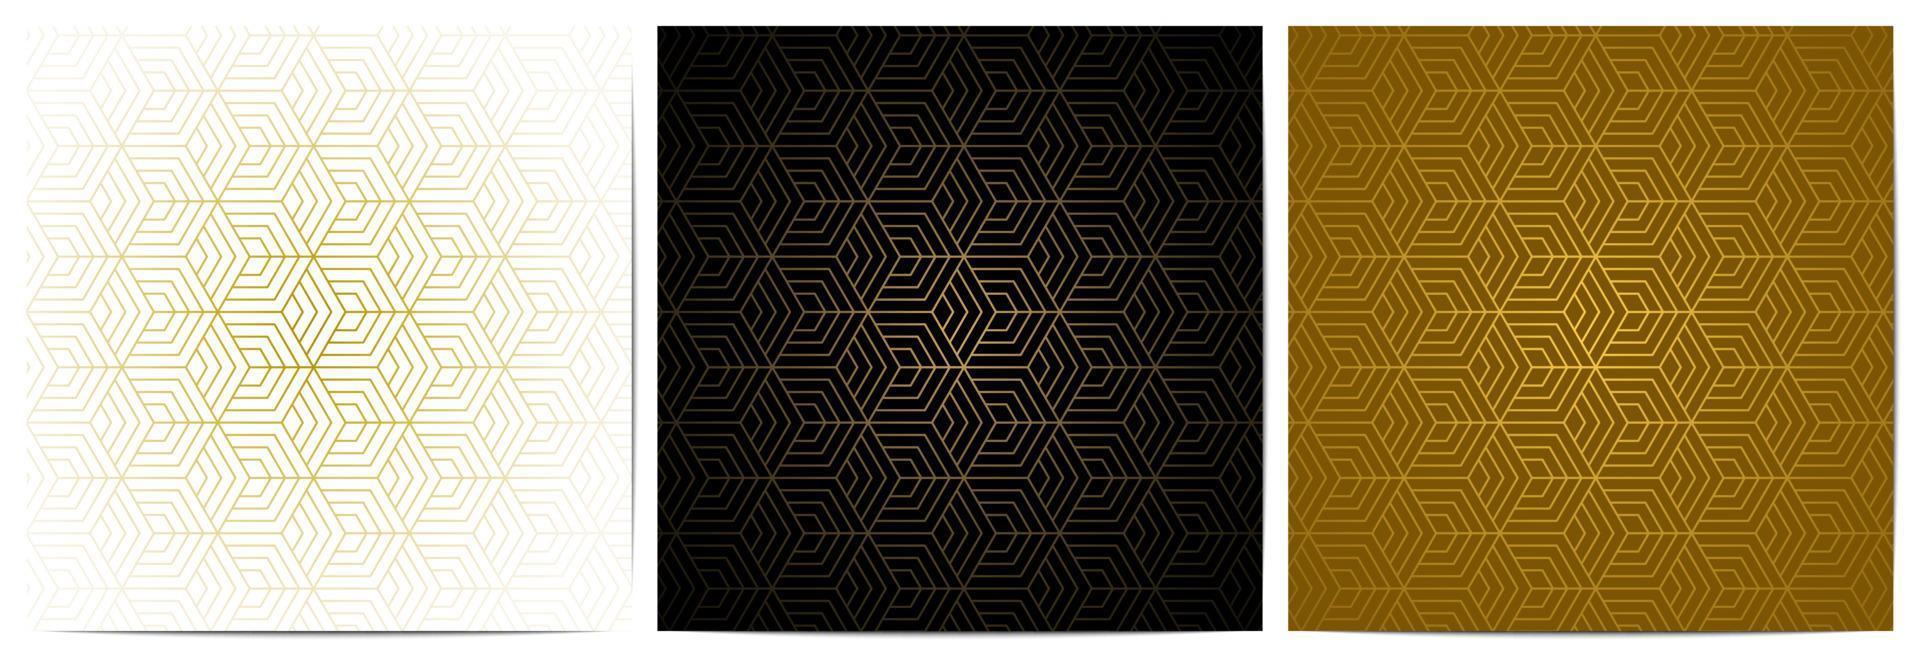 padrão geométrico com forma poligonal e linhas diagonais douradas vetor